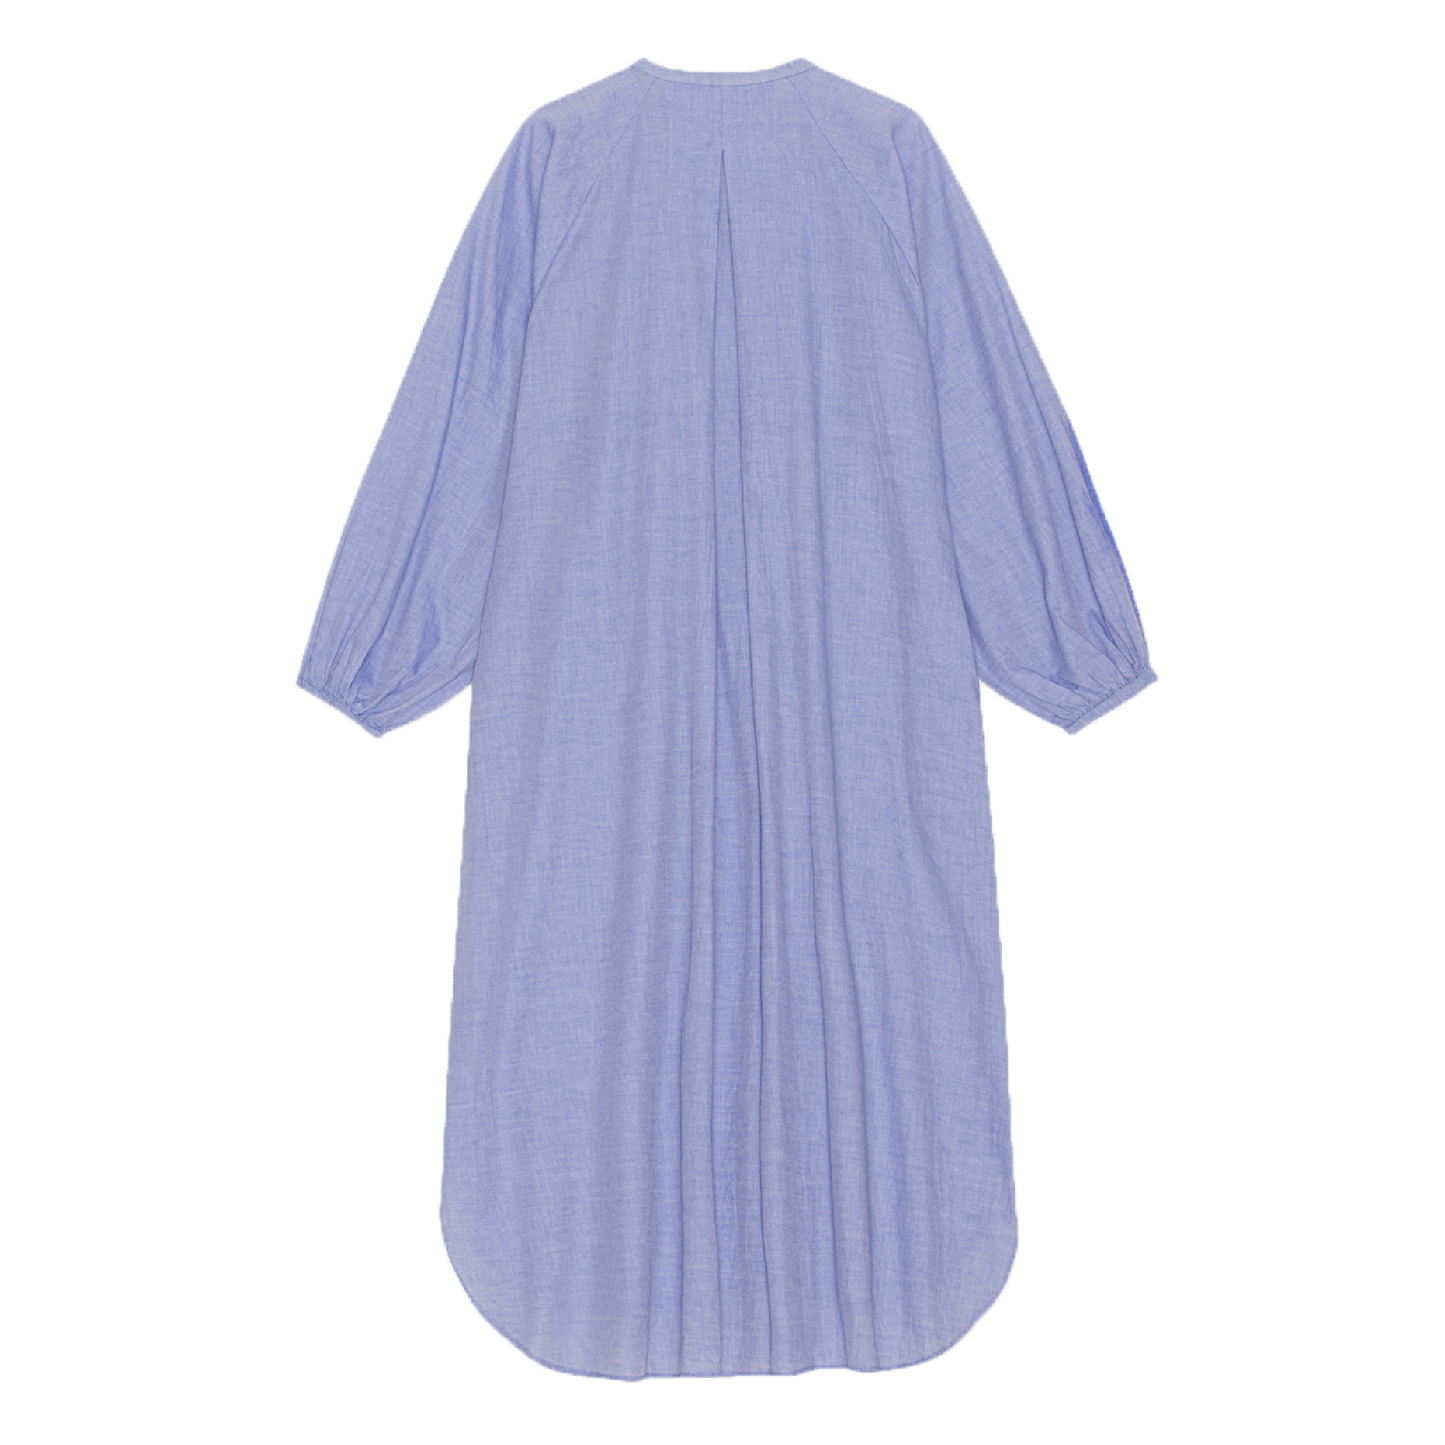 Lauren Shirt Dress, Chambray Light Blue